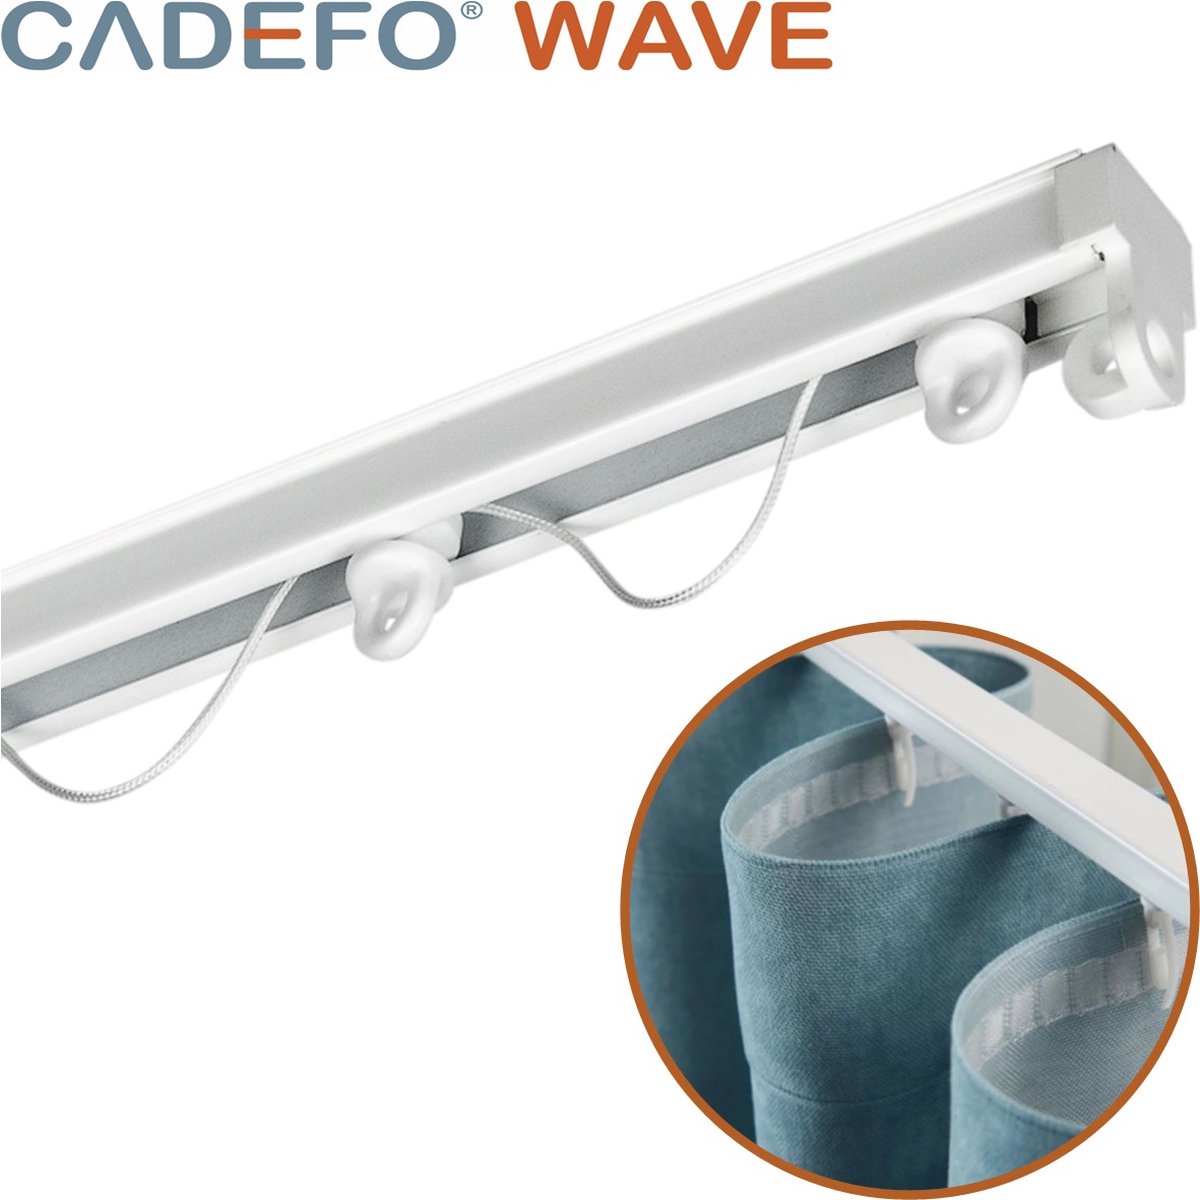 CADEFO WAVE (551 - 600 cm) Gordijnrails - Compleet op maat! - UIT 1 STUK - Leverbaar tot 6 meter - Plafondbevestiging - Lengte 595 cm